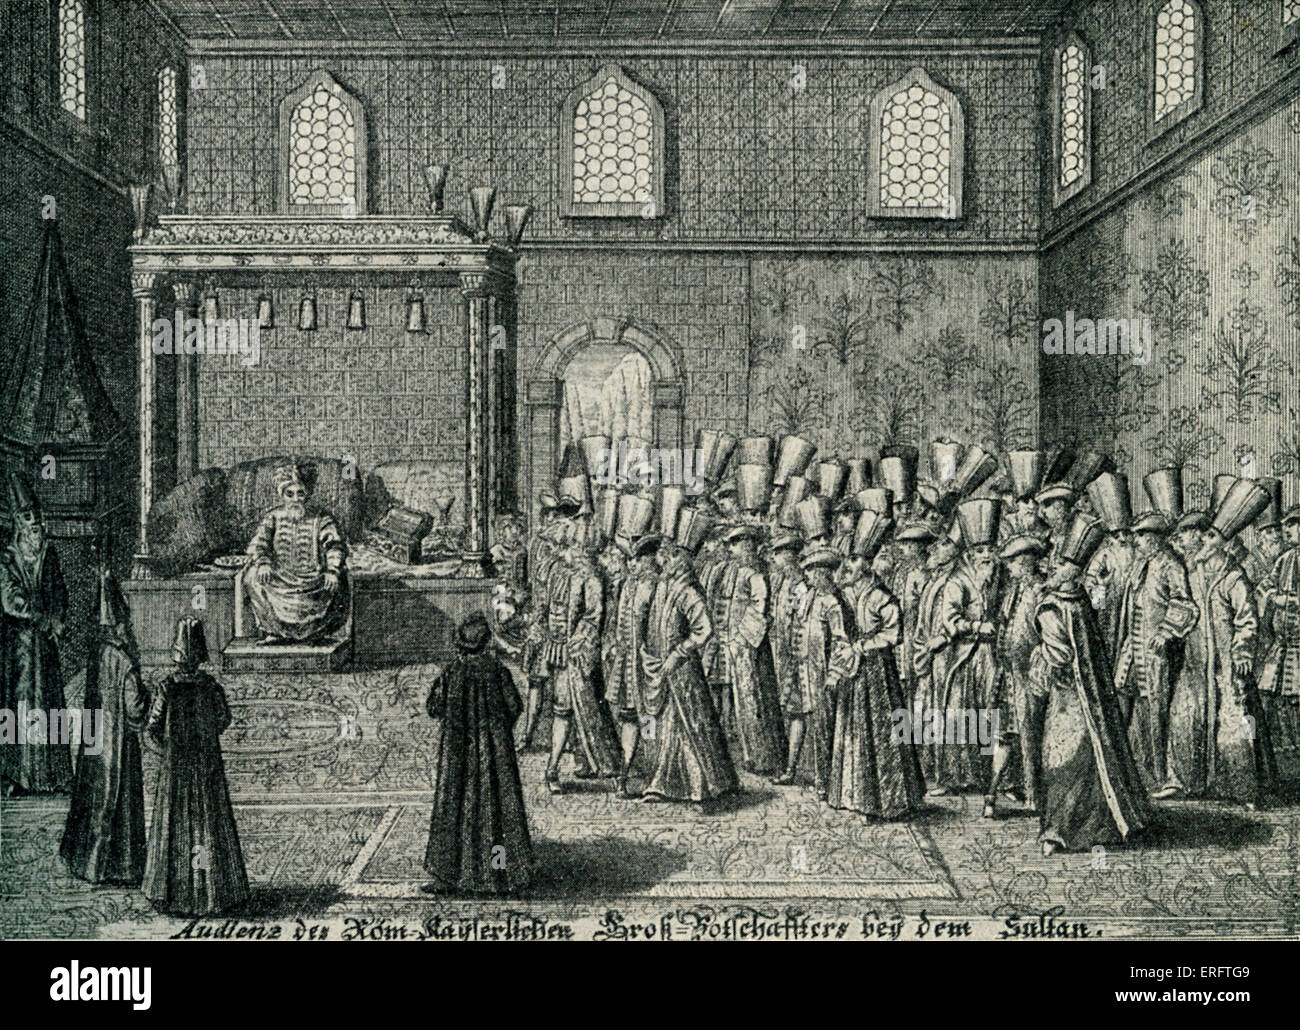 Kaiserlichen Gesandtschaft an ein Publikum mit dem Sultan - aus "Kayserliche Großbotschaft", Nürnberg, 1723. Stockfoto